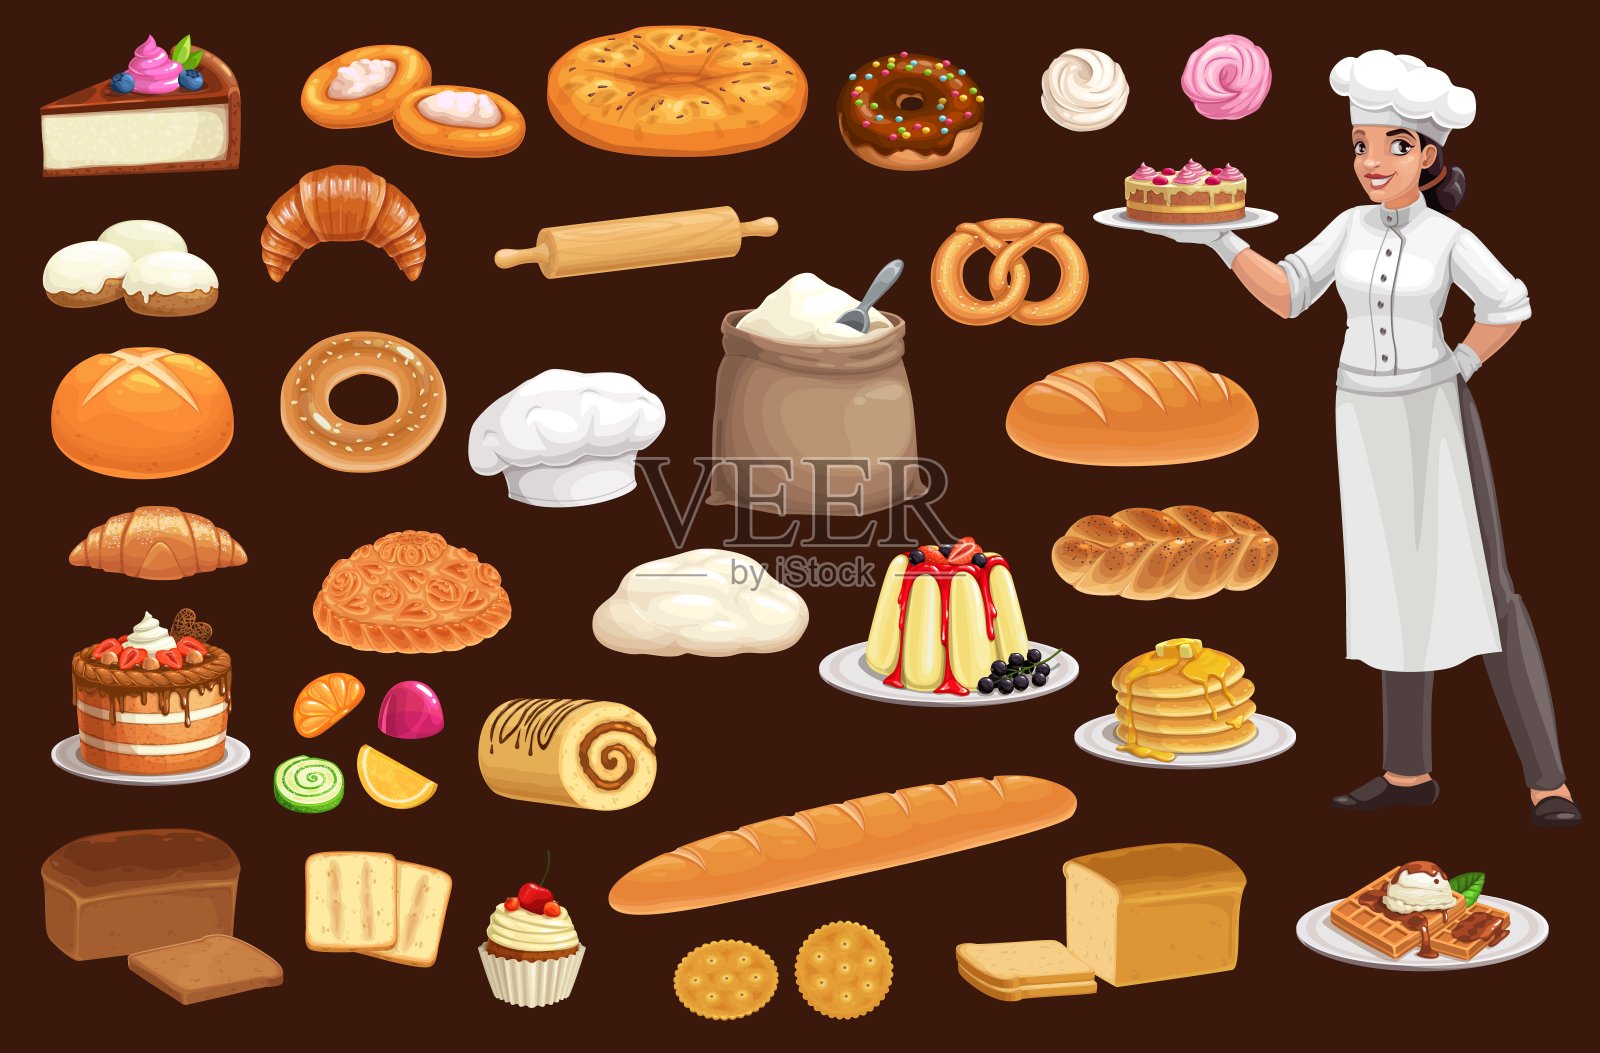 面包师、蛋糕、面包、糕点、小圆面包和纸杯蛋糕插画图片素材